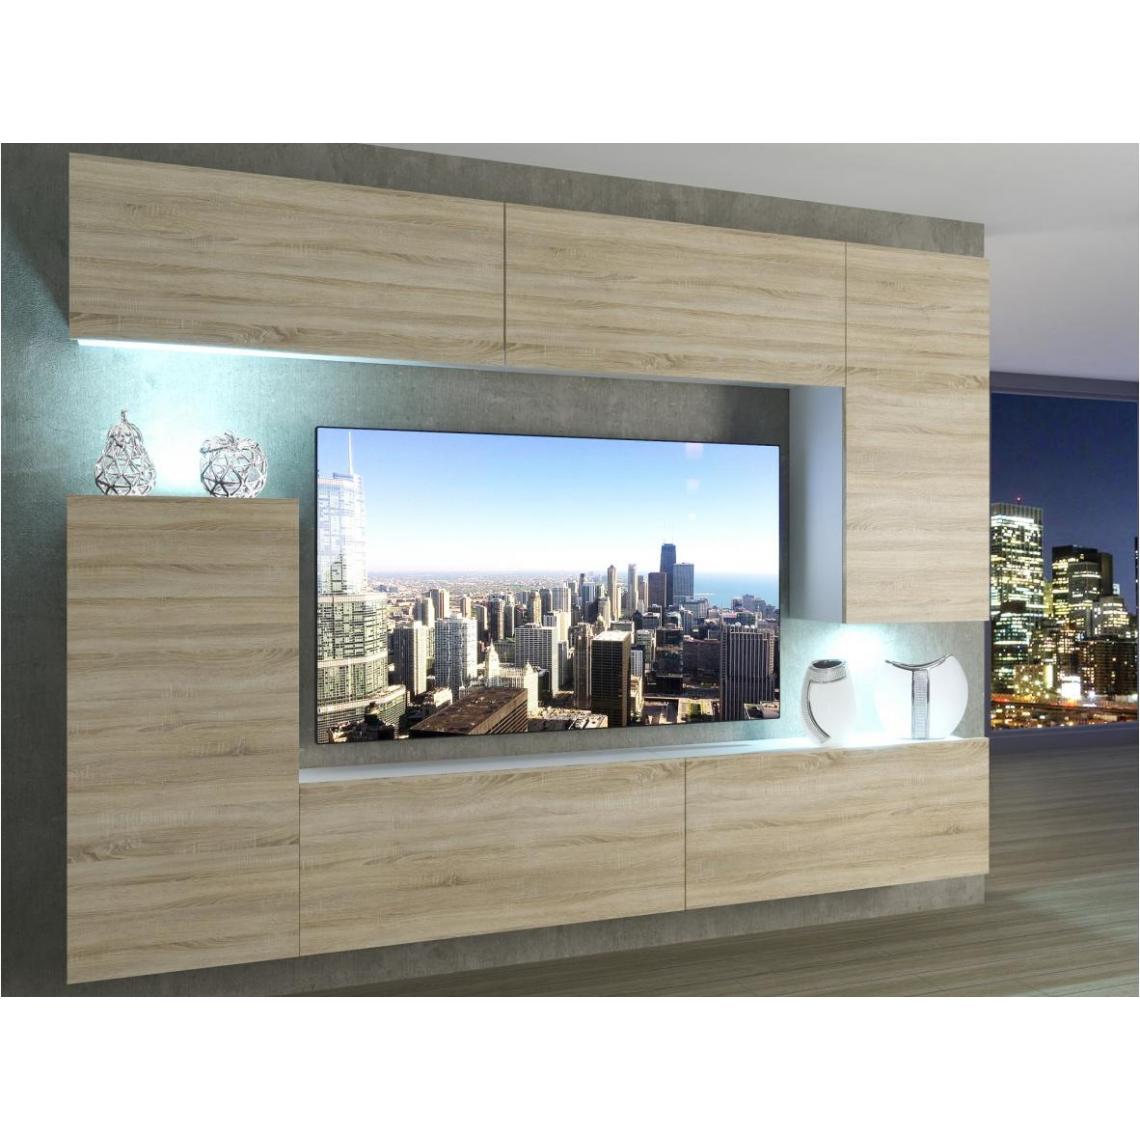 Hucoco - SLIDE - Ensemble meubles TV - Unité murale largeur 250 cm - Mur TV à suspendre - Aspect bois - Sans LED - Sonoma - Meubles TV, Hi-Fi